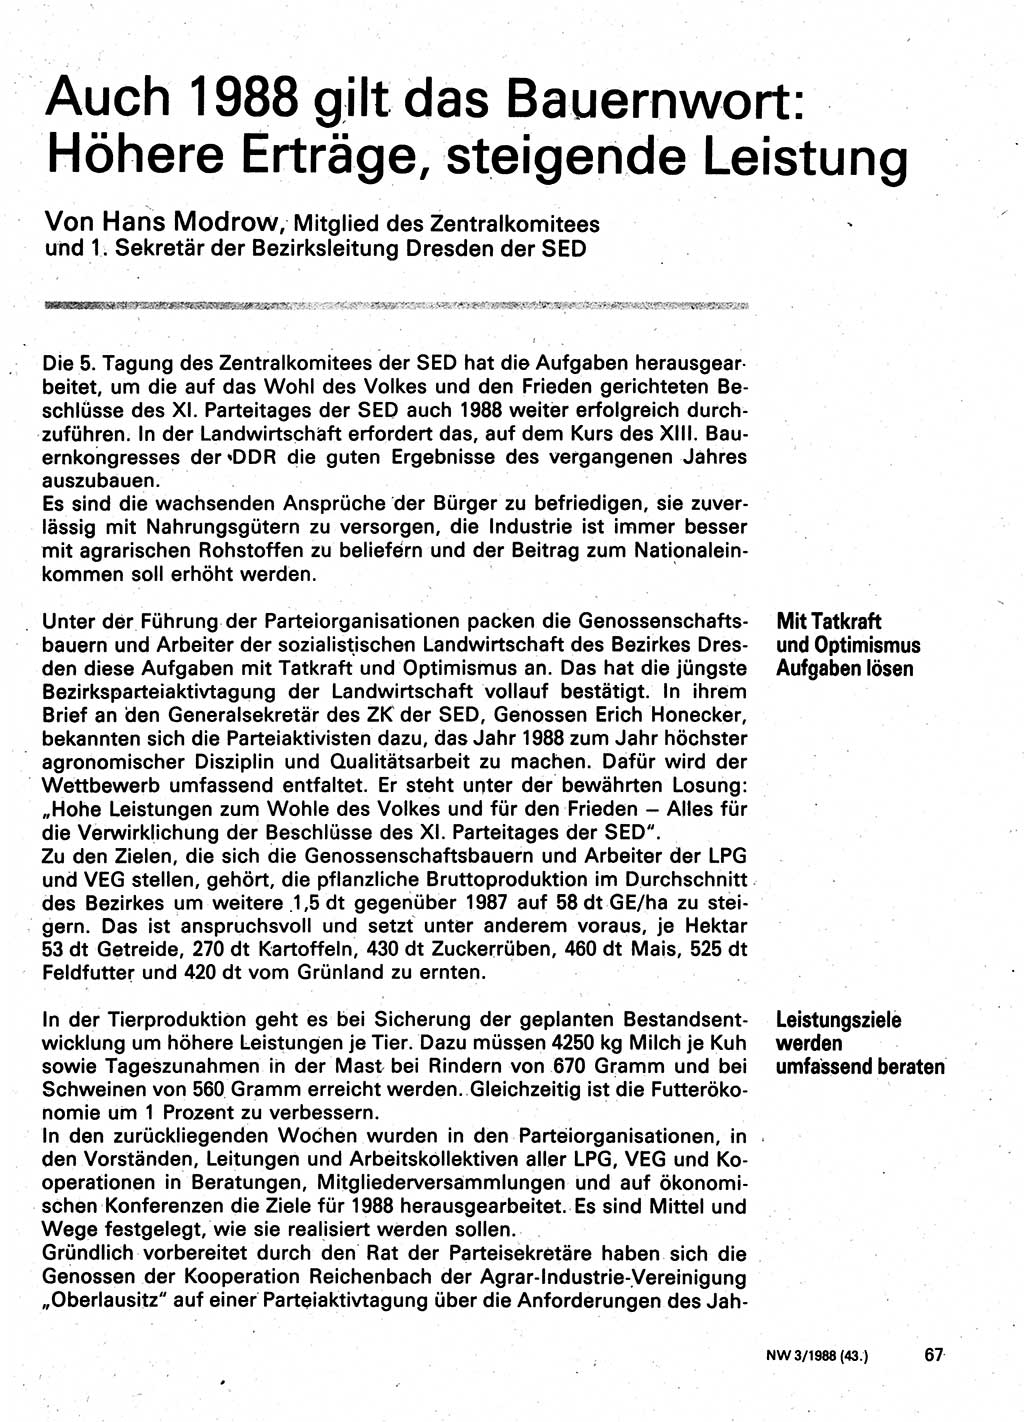 Neuer Weg (NW), Organ des Zentralkomitees (ZK) der SED (Sozialistische Einheitspartei Deutschlands) für Fragen des Parteilebens, 43. Jahrgang [Deutsche Demokratische Republik (DDR)] 1988, Seite 67 (NW ZK SED DDR 1988, S. 67)